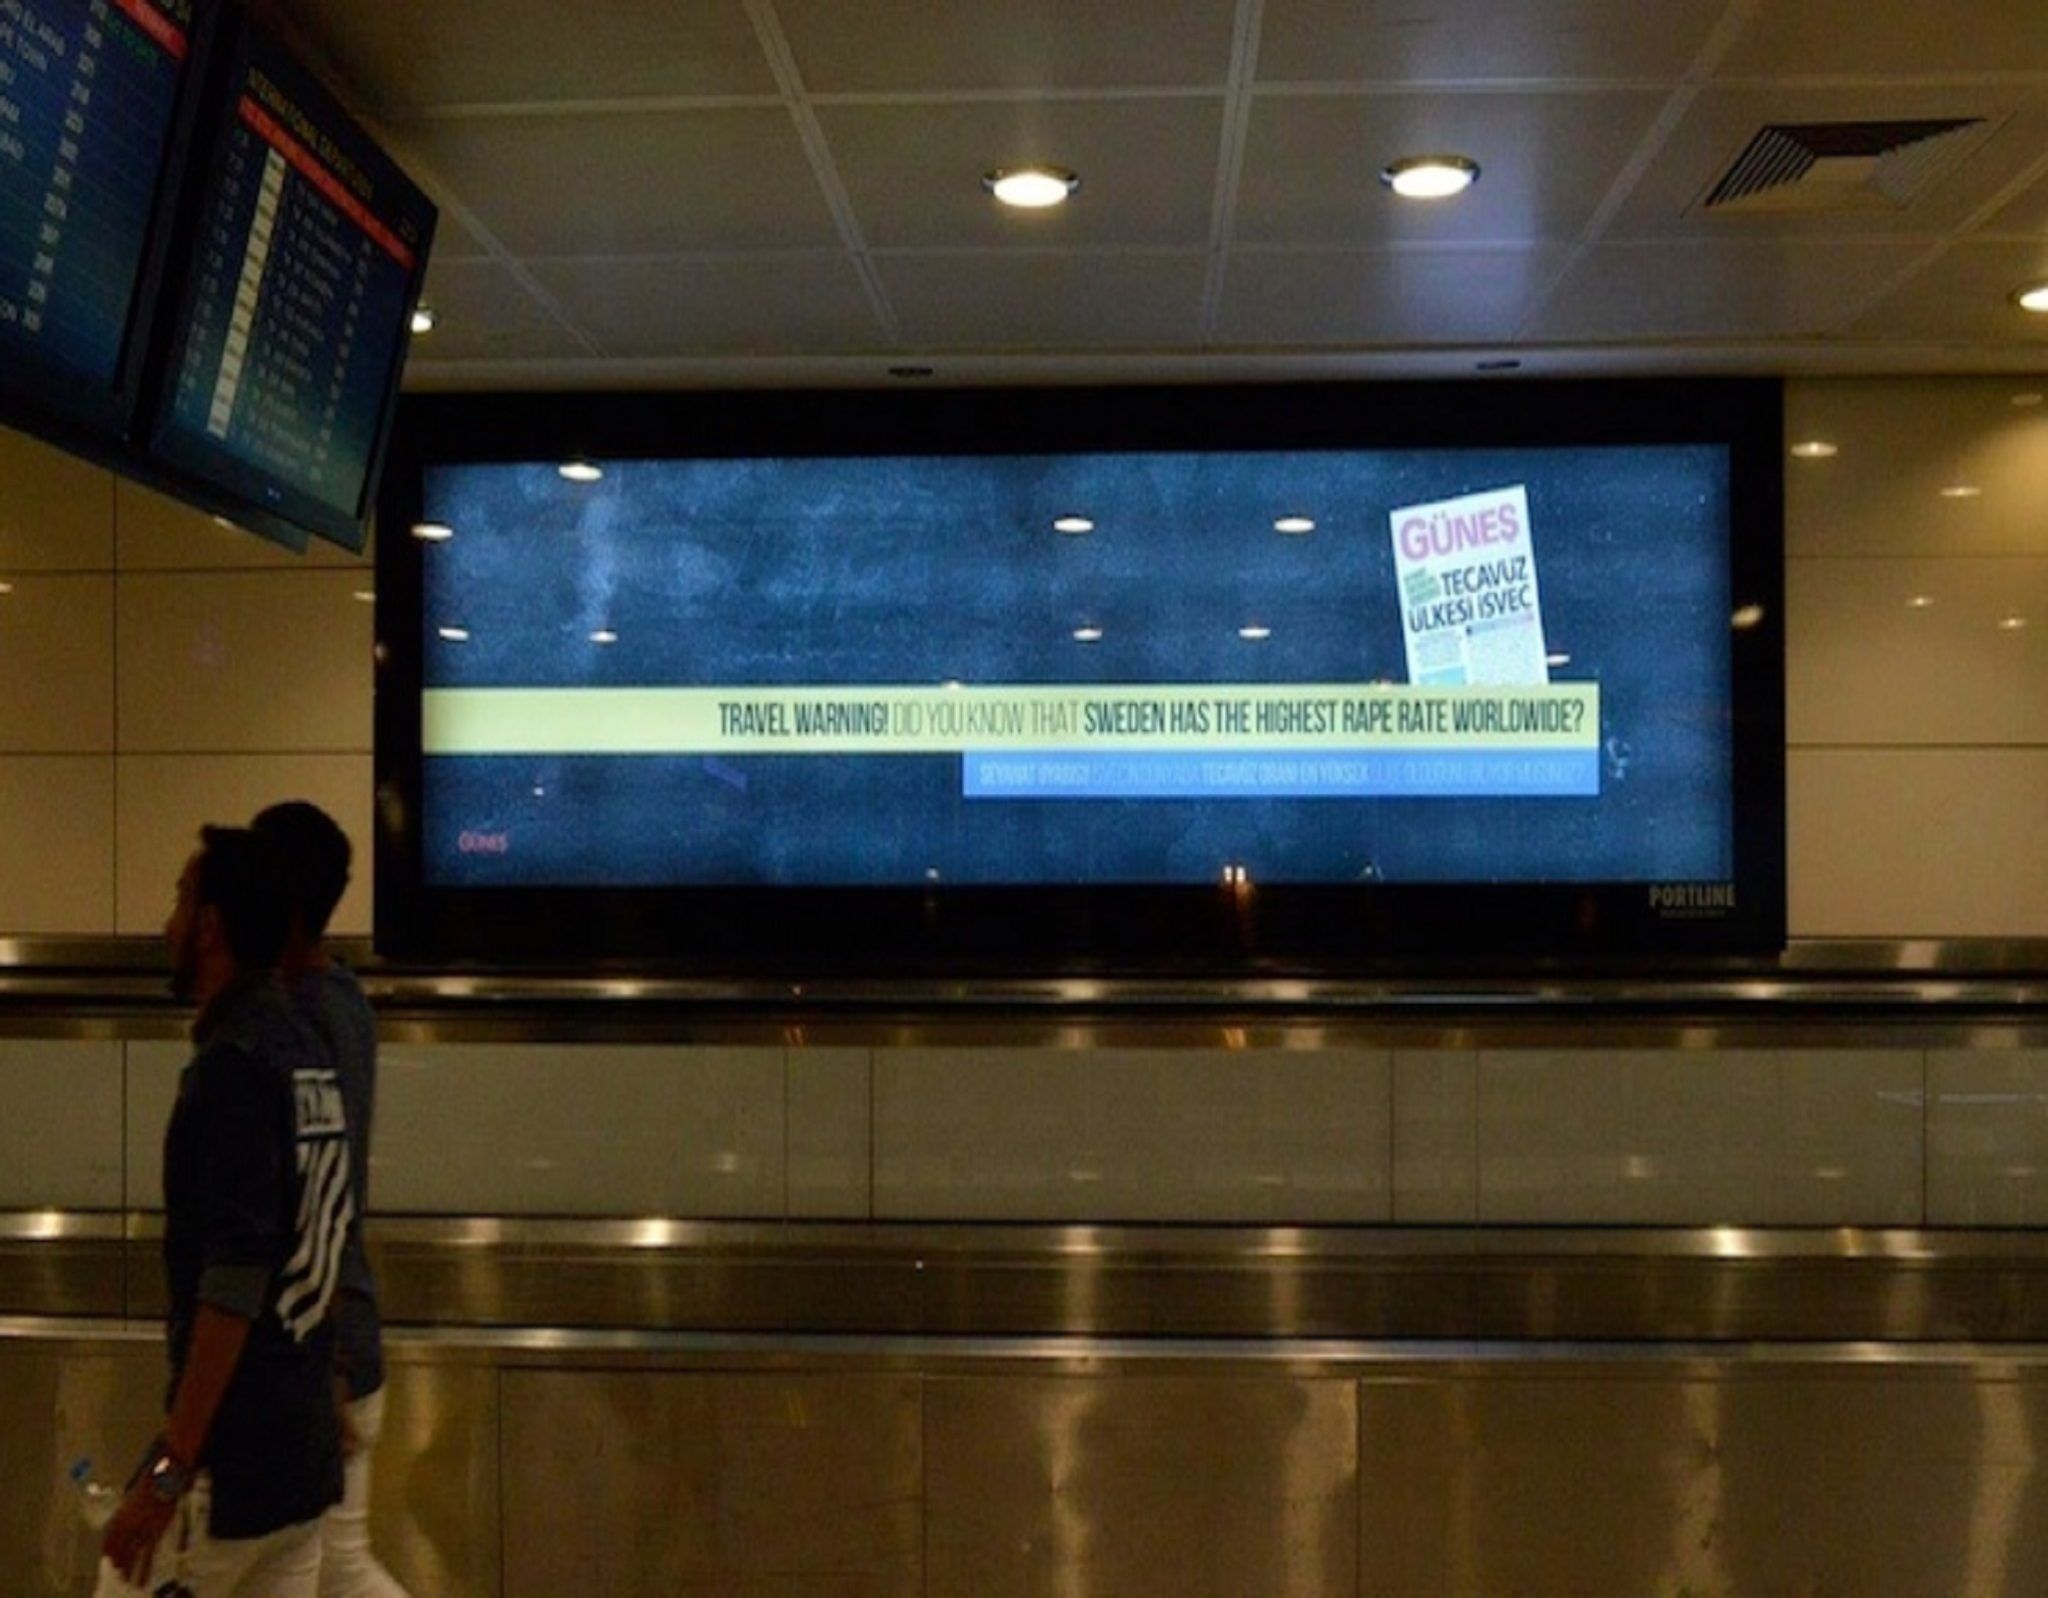 İsveç’e misilleme: Atatürk Havalimanı’ndaki panolarda ‘ tevacüz uyarısı’ yazısı